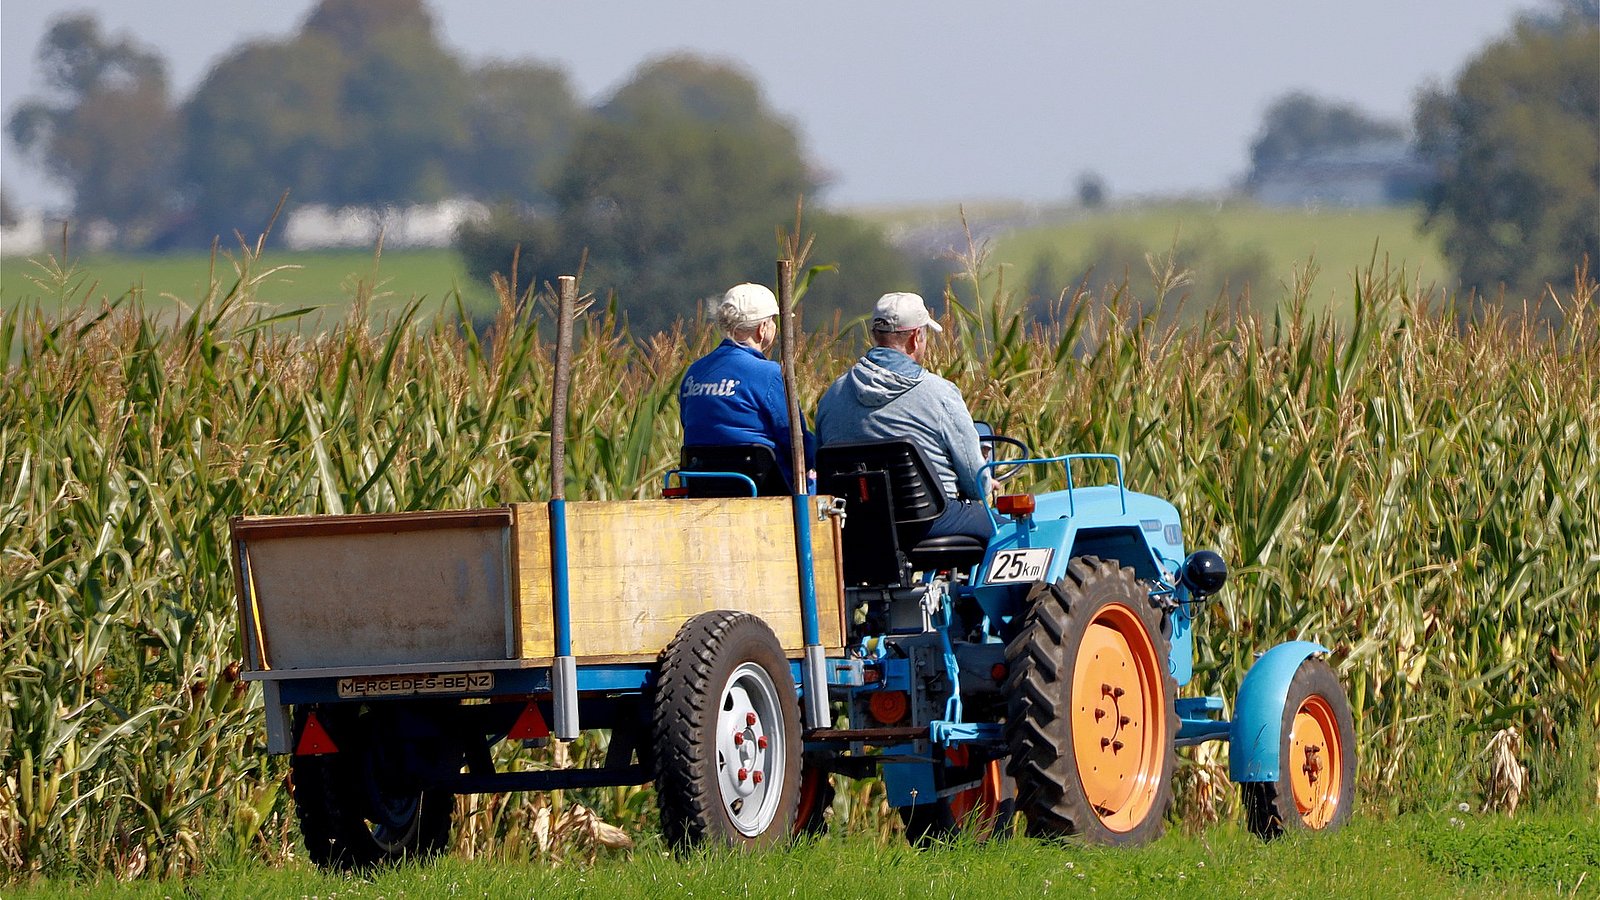 Zwei Landwirt*innen sitzen auf einem Traktor und fahren über das Feld. 